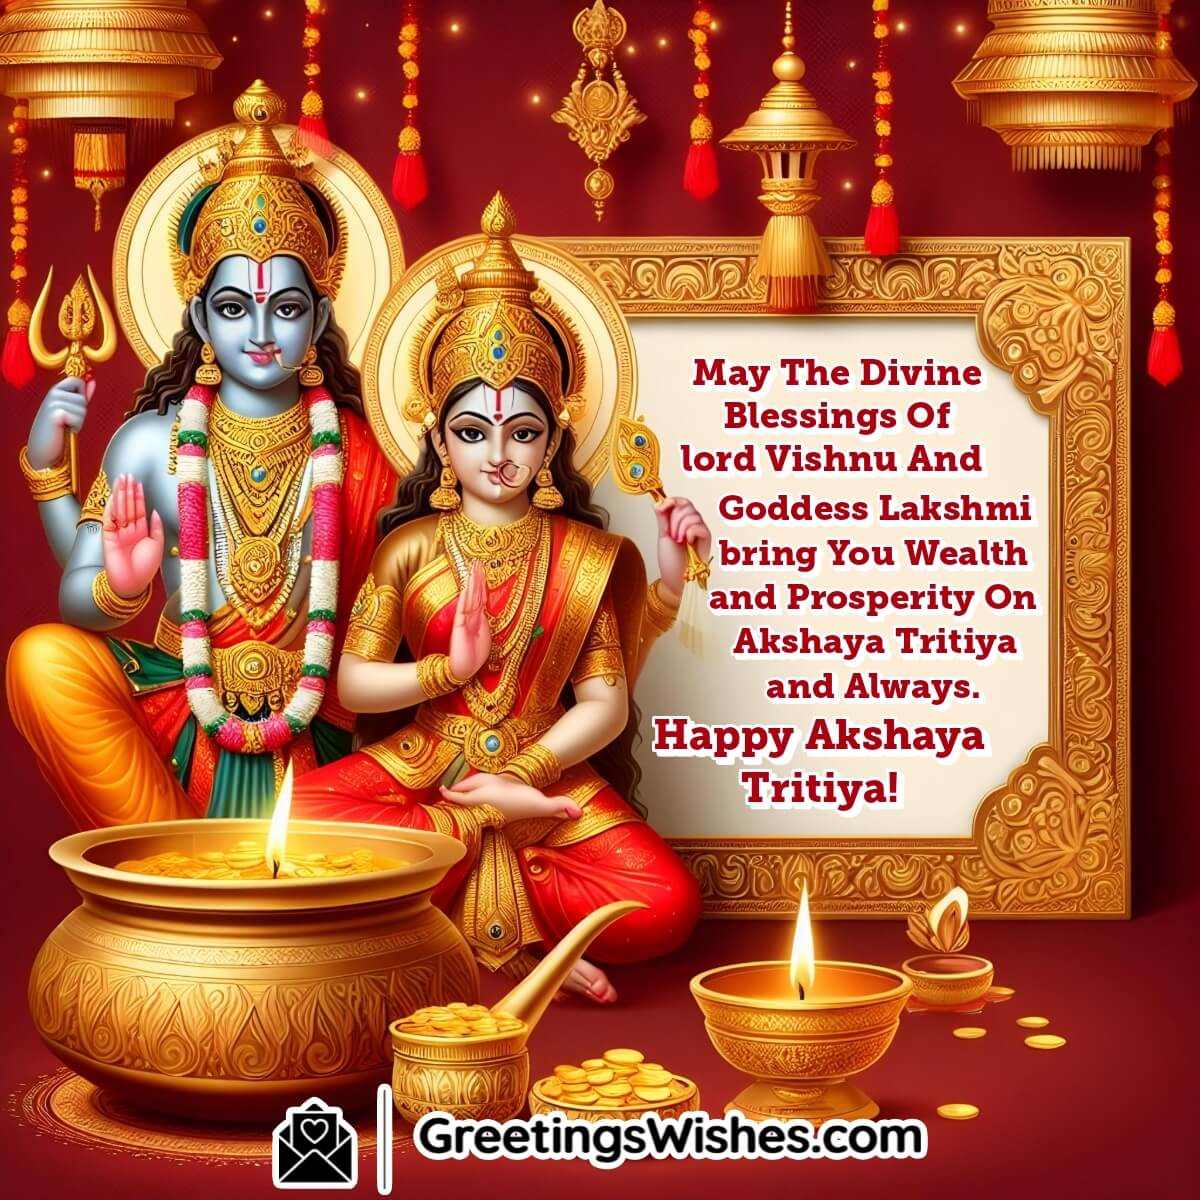 Happy Akshaya Tritiya Divine Blessings